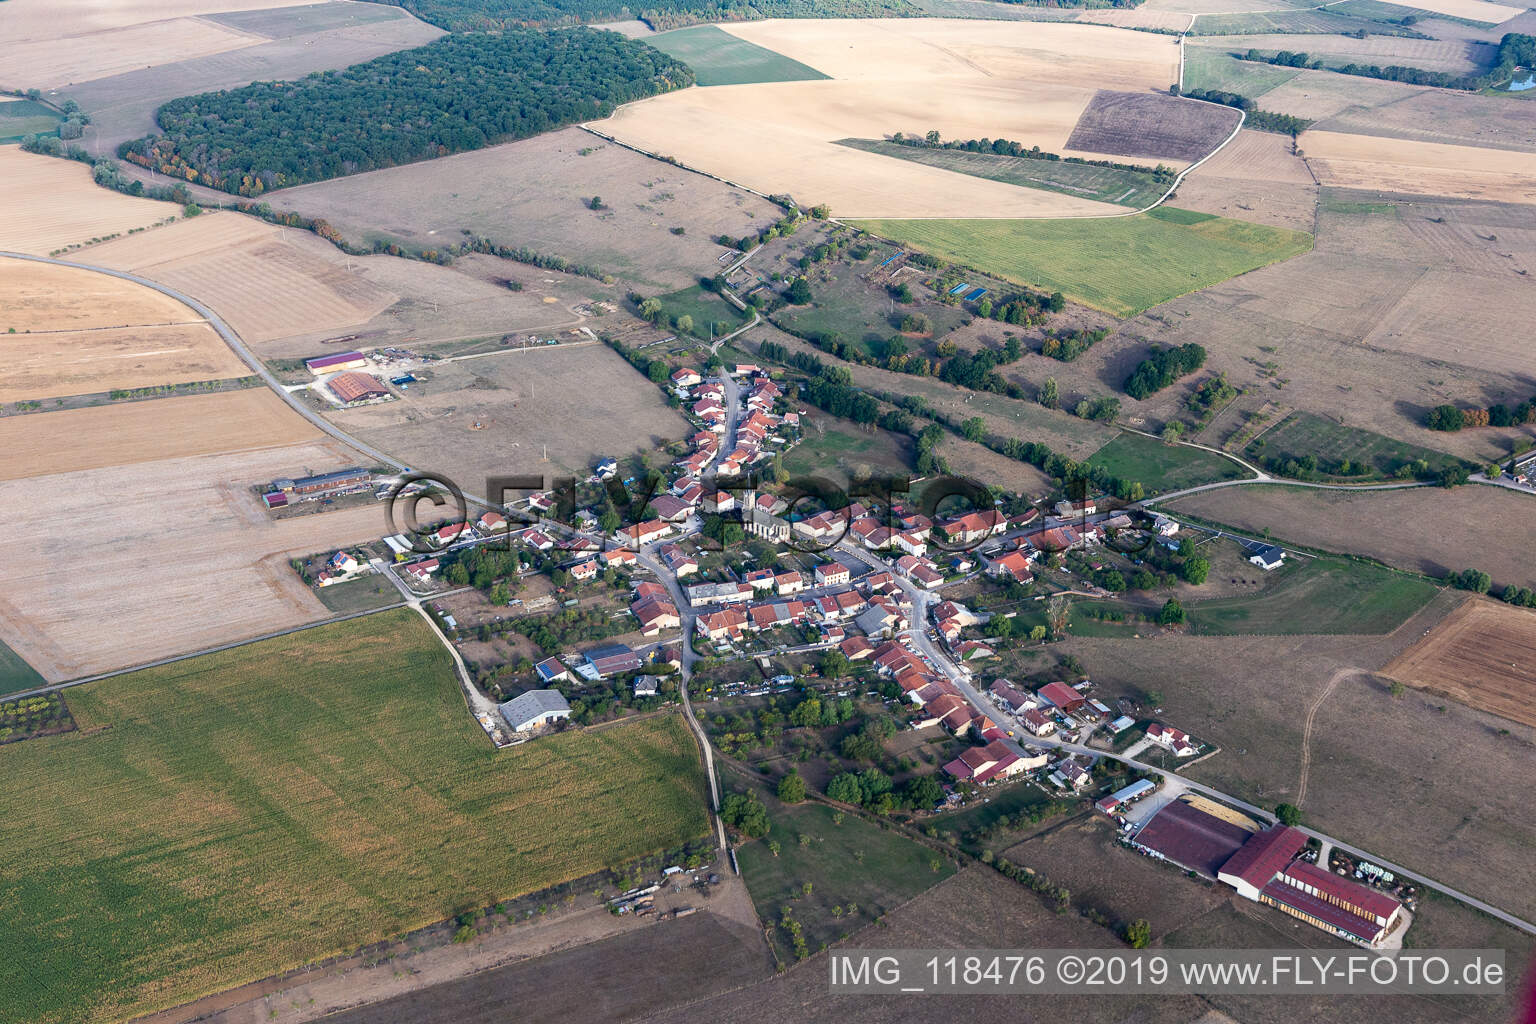 Luftbild von Aéroport d'Epinal-Mirecourt in Juvaincourt im Bundesland Vosges, Frankreich